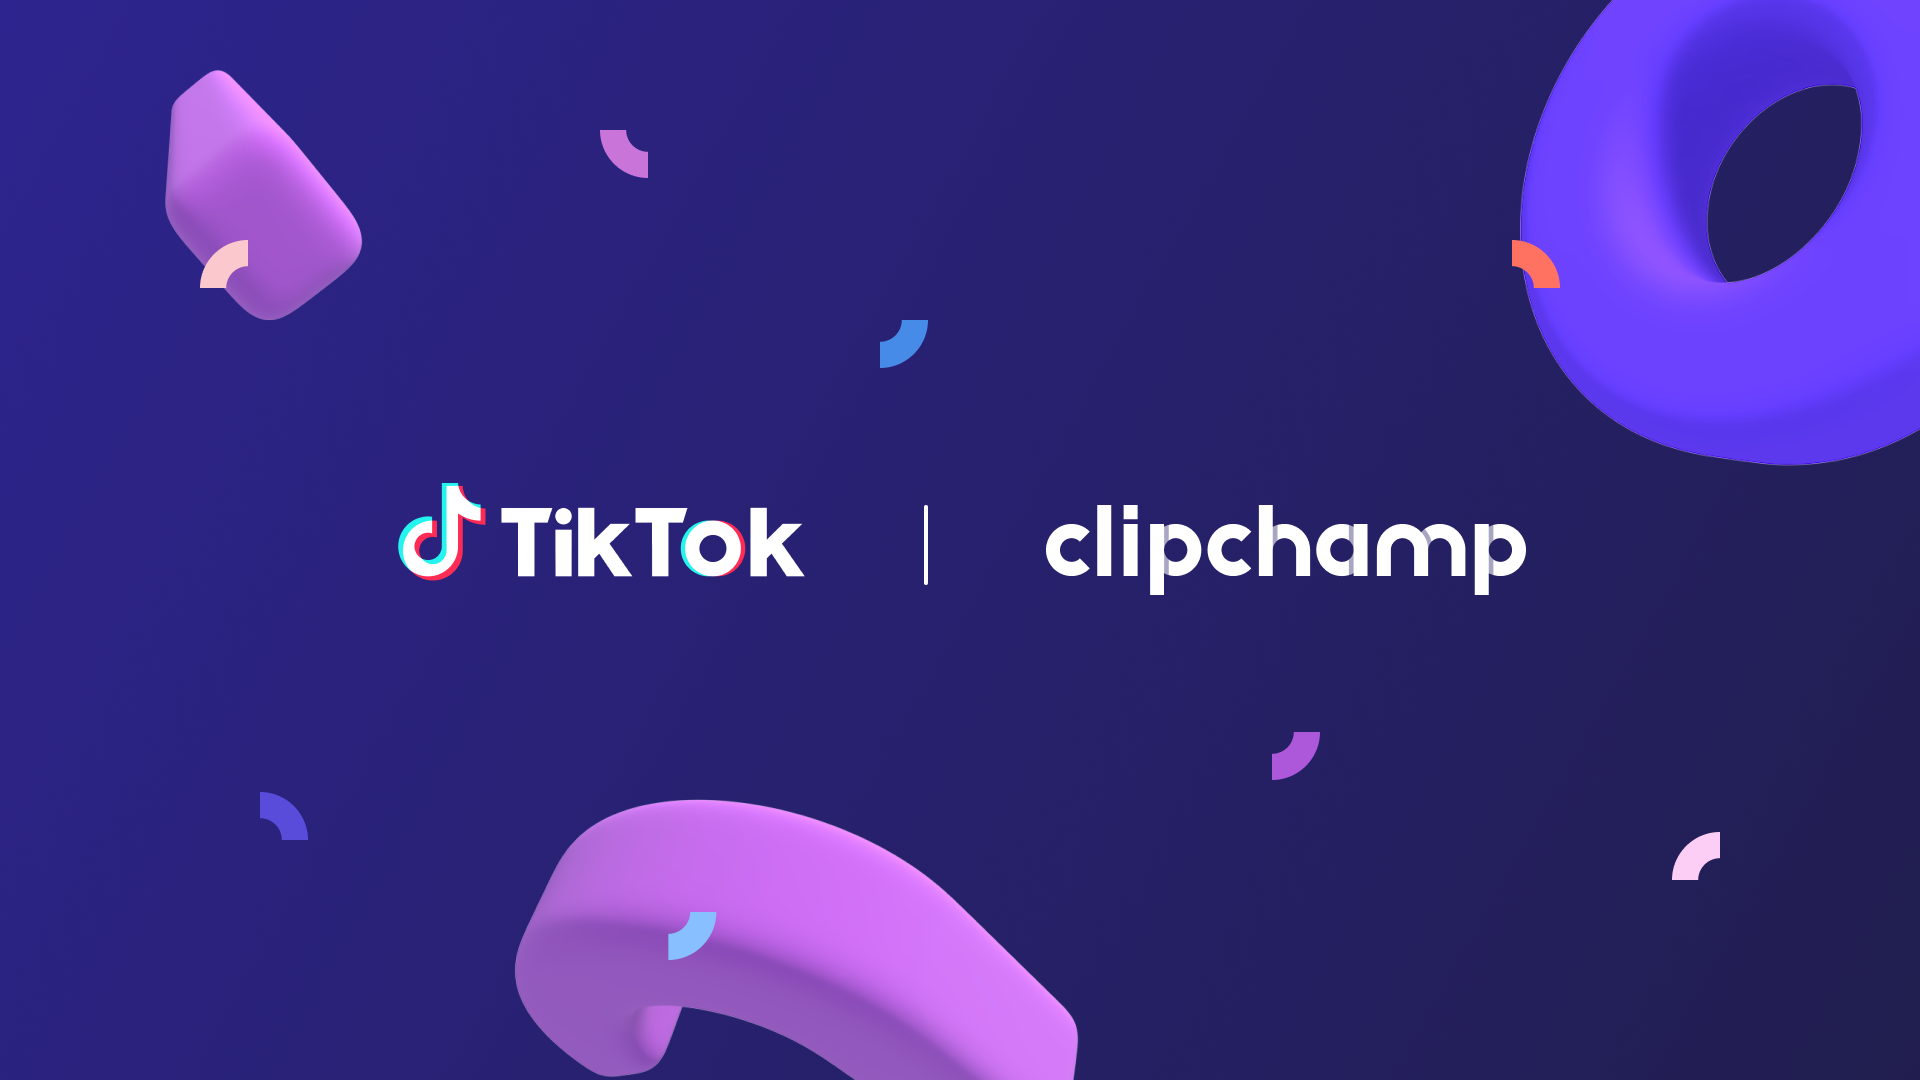 TikTok과 Clipchamp 로고